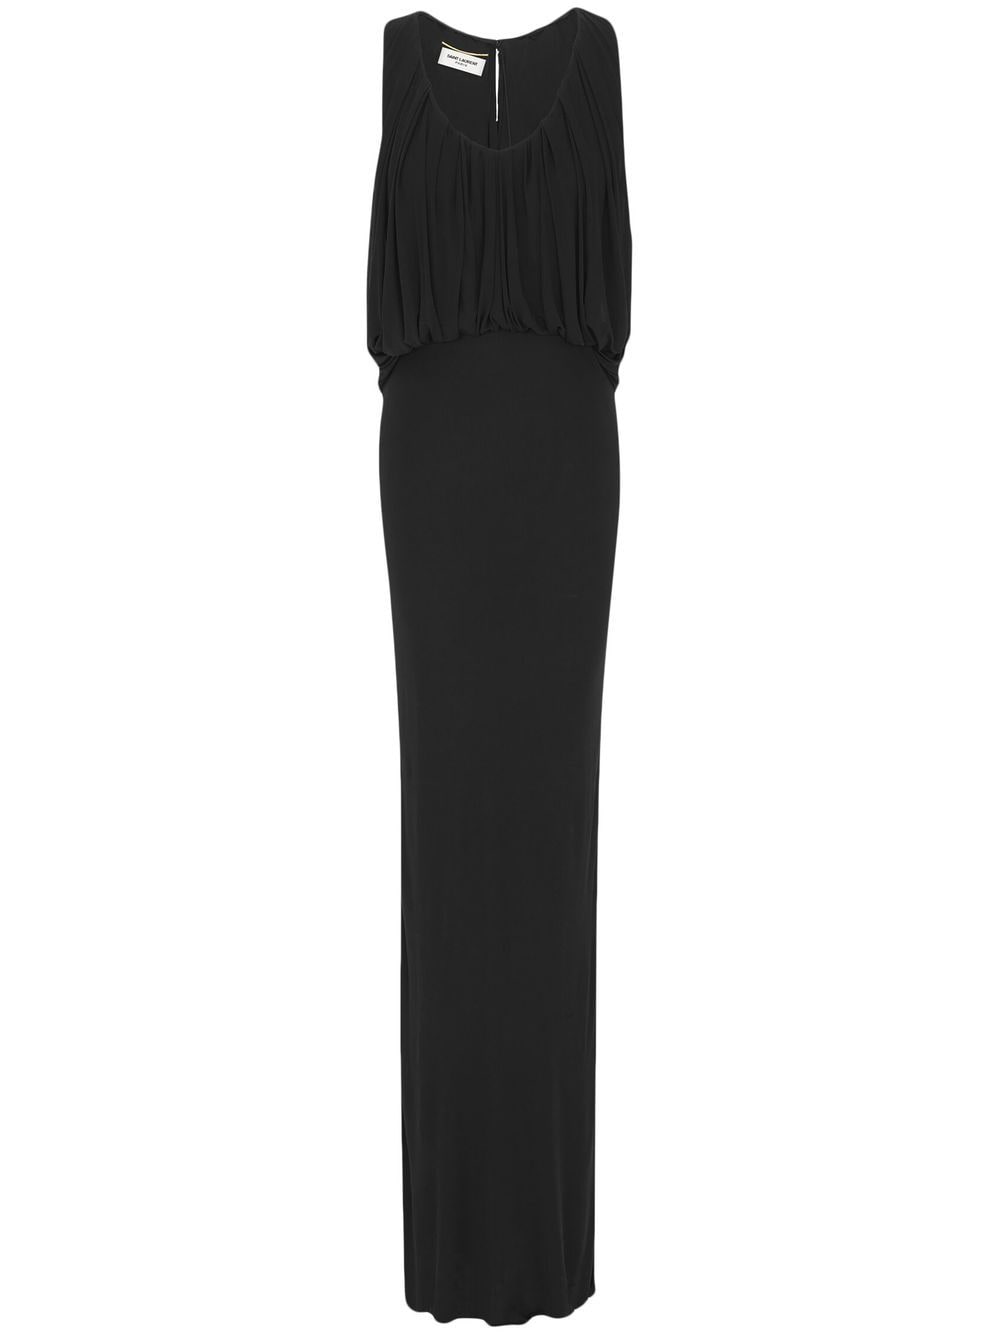 Saint Laurent Sleeveless Draped Dress In Black